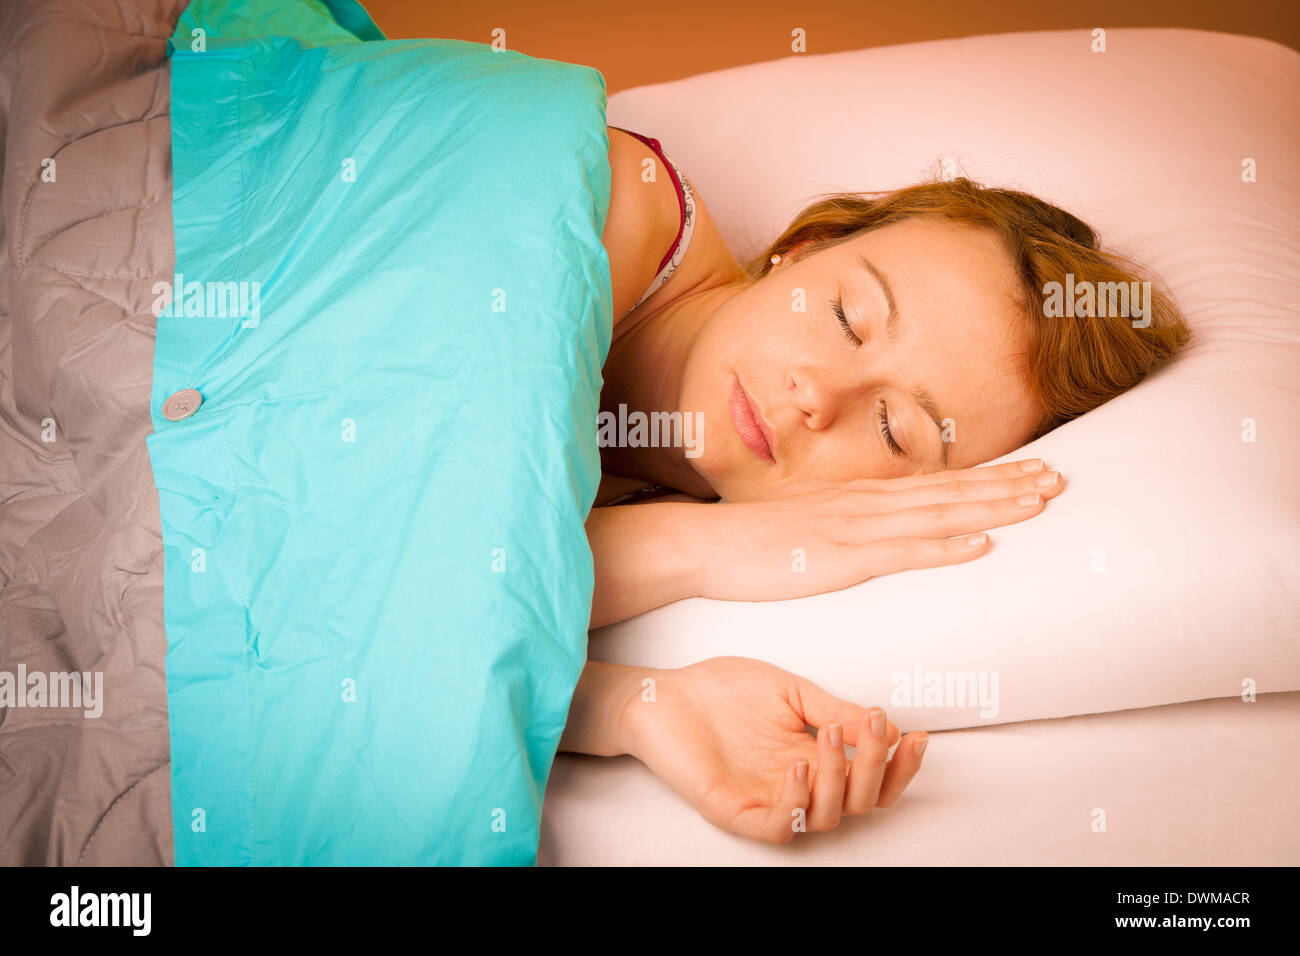 Frau liegend auf Kissen im Bett, bedeckt mit blauen Decke Stockfoto